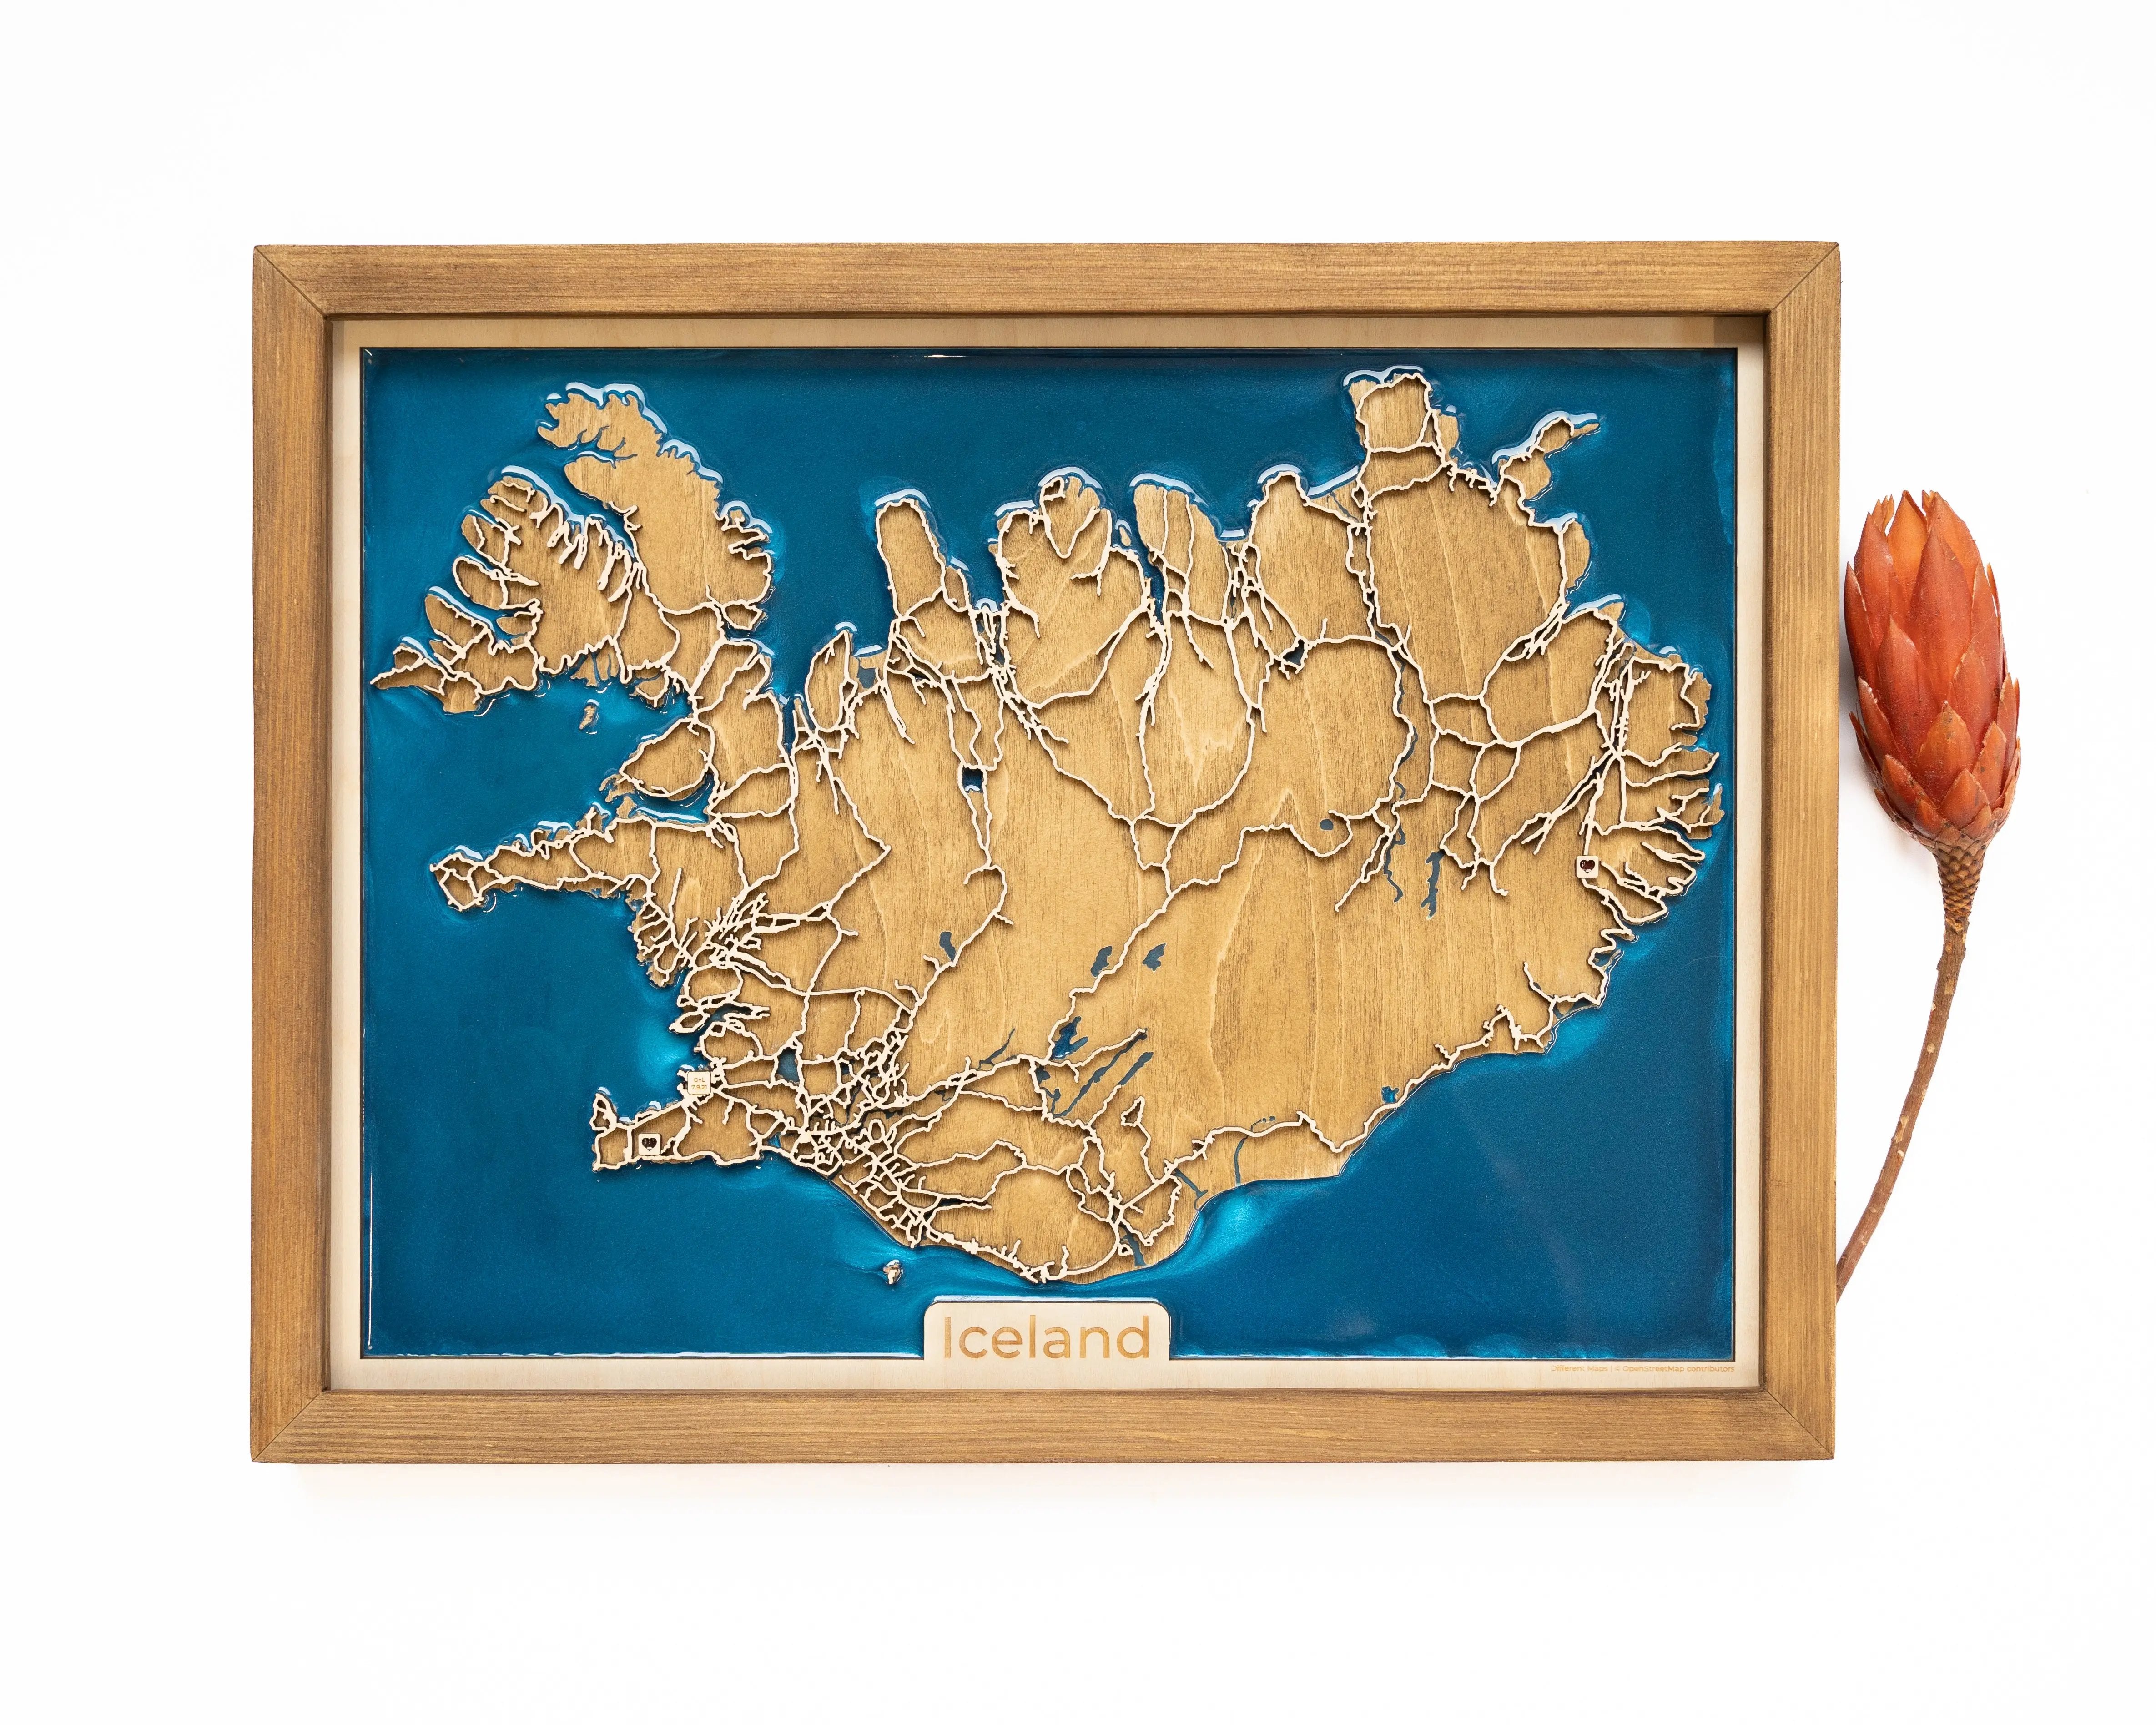 Iceland Wood Map